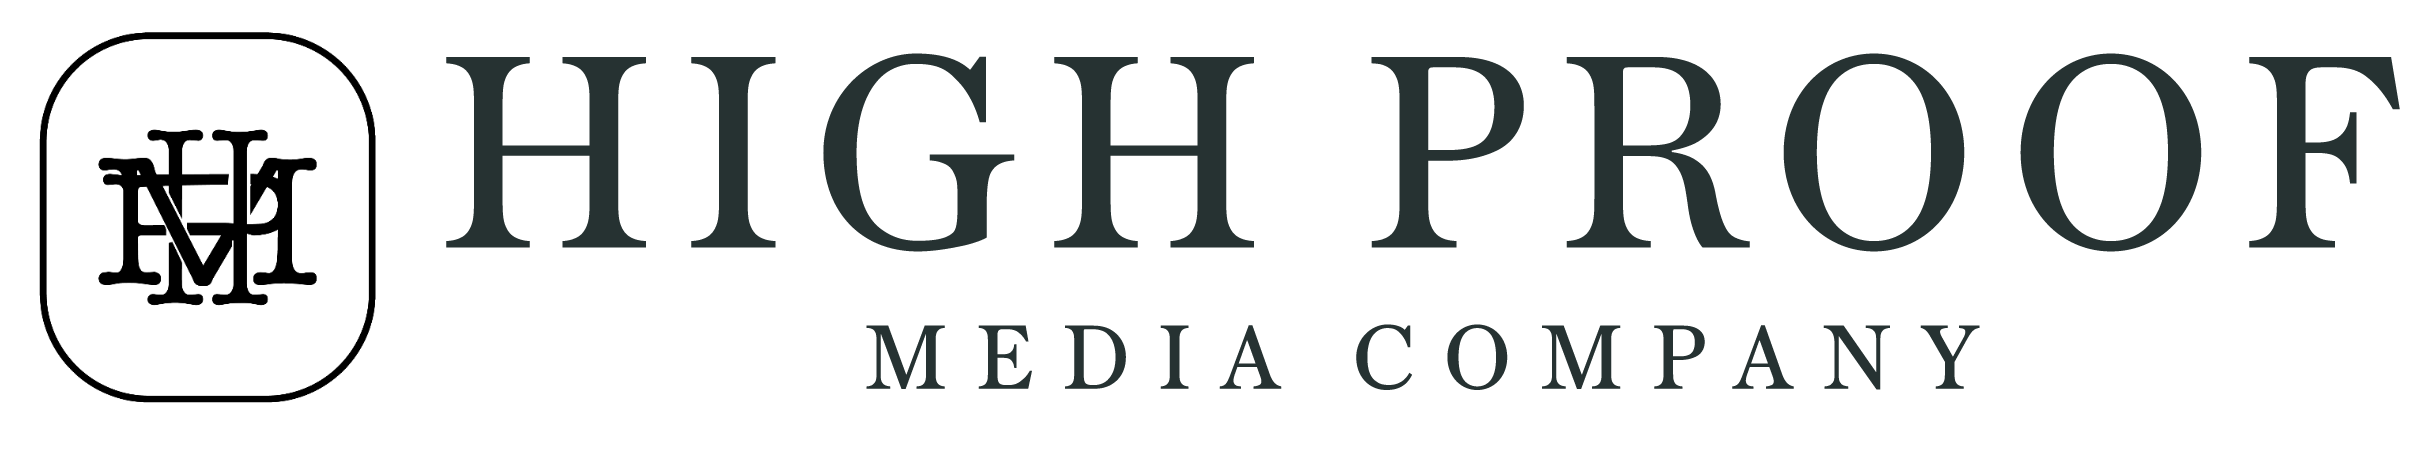 High Proof Media Company Logo